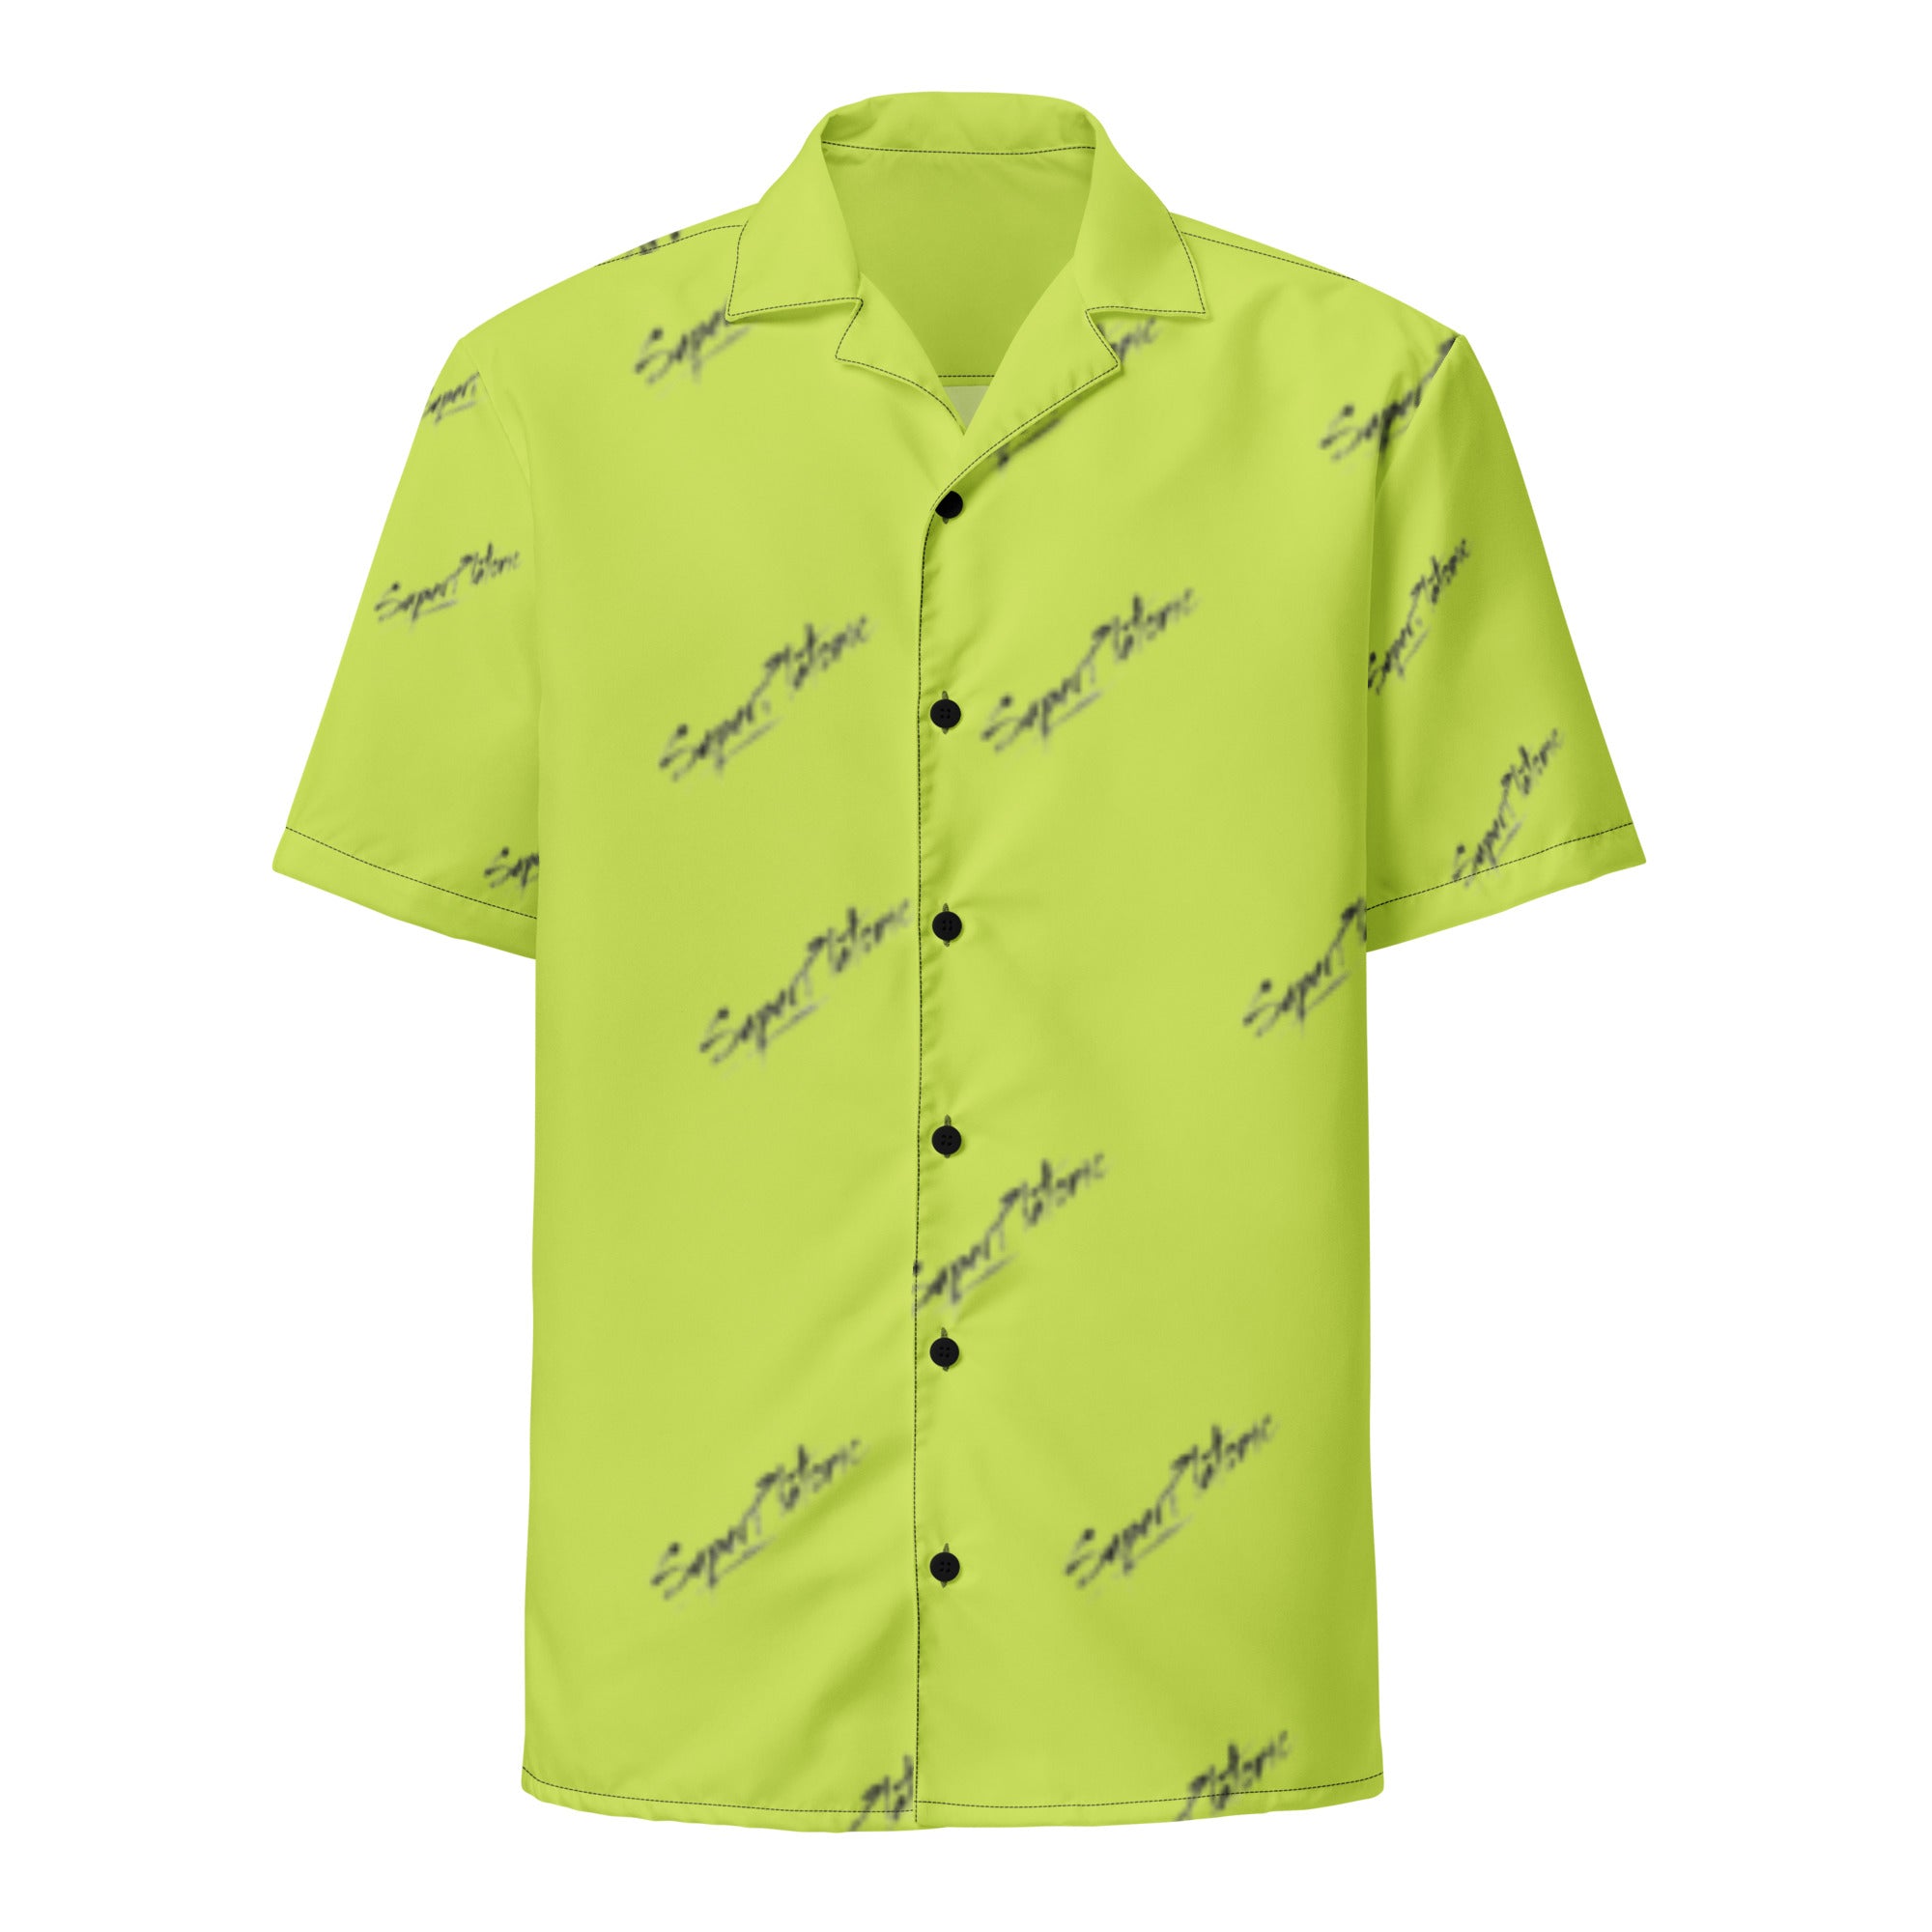 Dapper Button-Up Shirt "Green Apple"